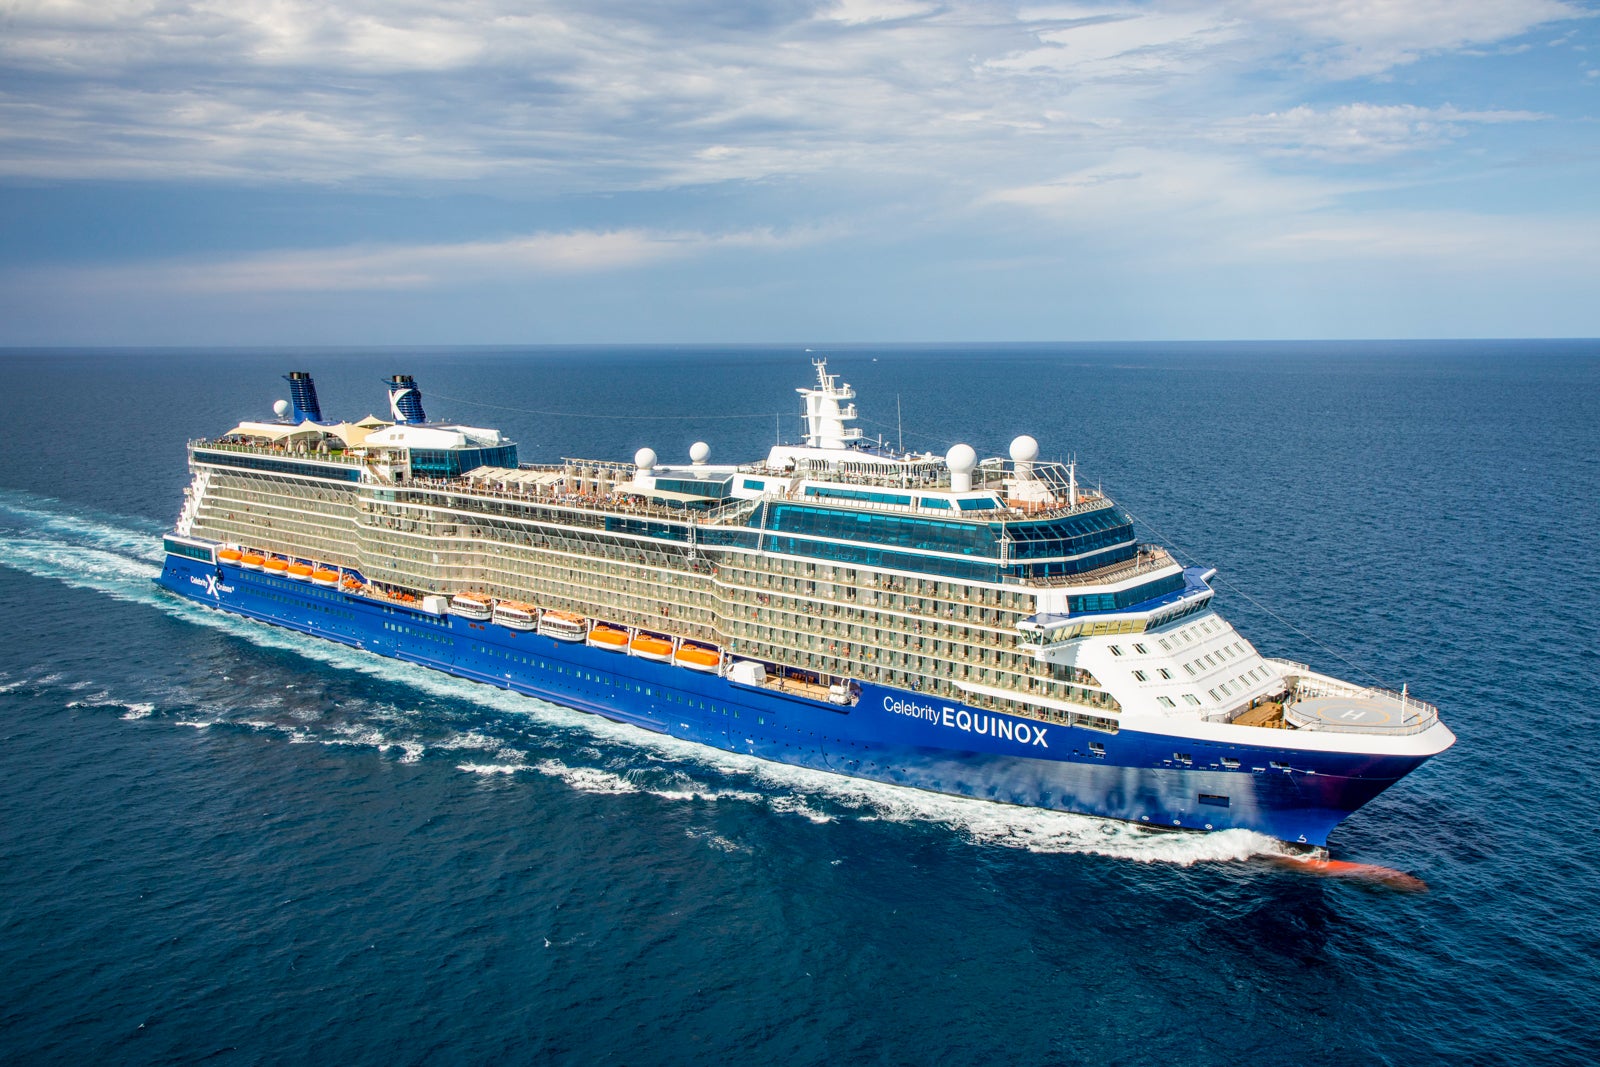 celebrity cruises size of ships